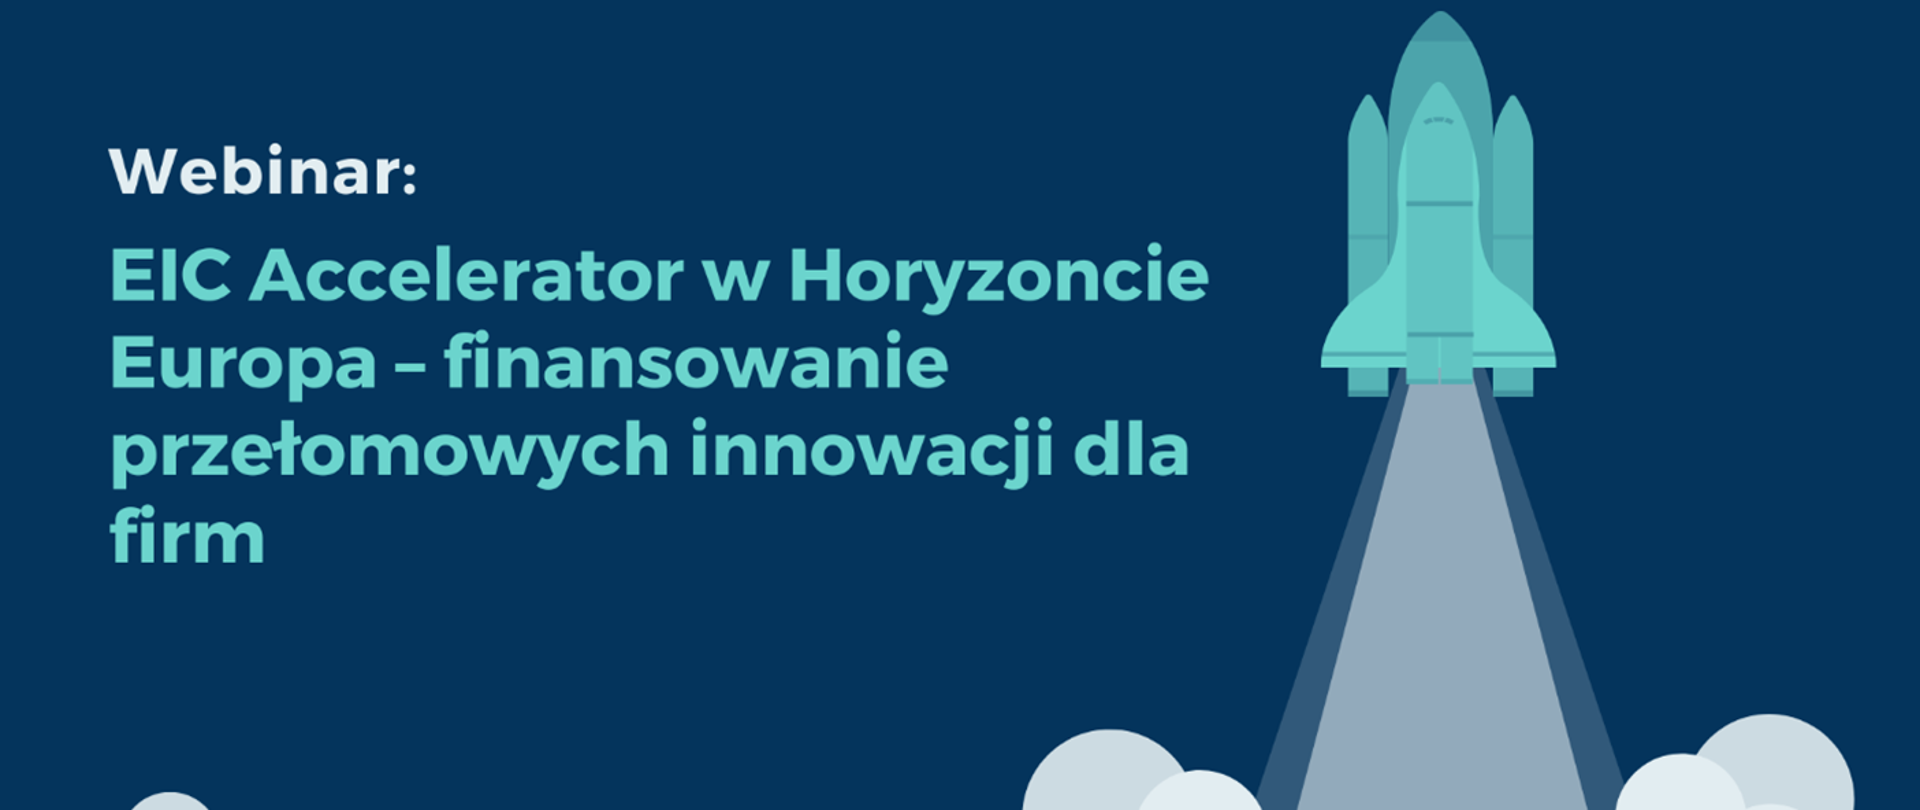 Webinar:
EIC Accelerator w Horyzoncie Europa - finansowanie przełomowych innowacji dla firm
21 kwietnia 2022 r.